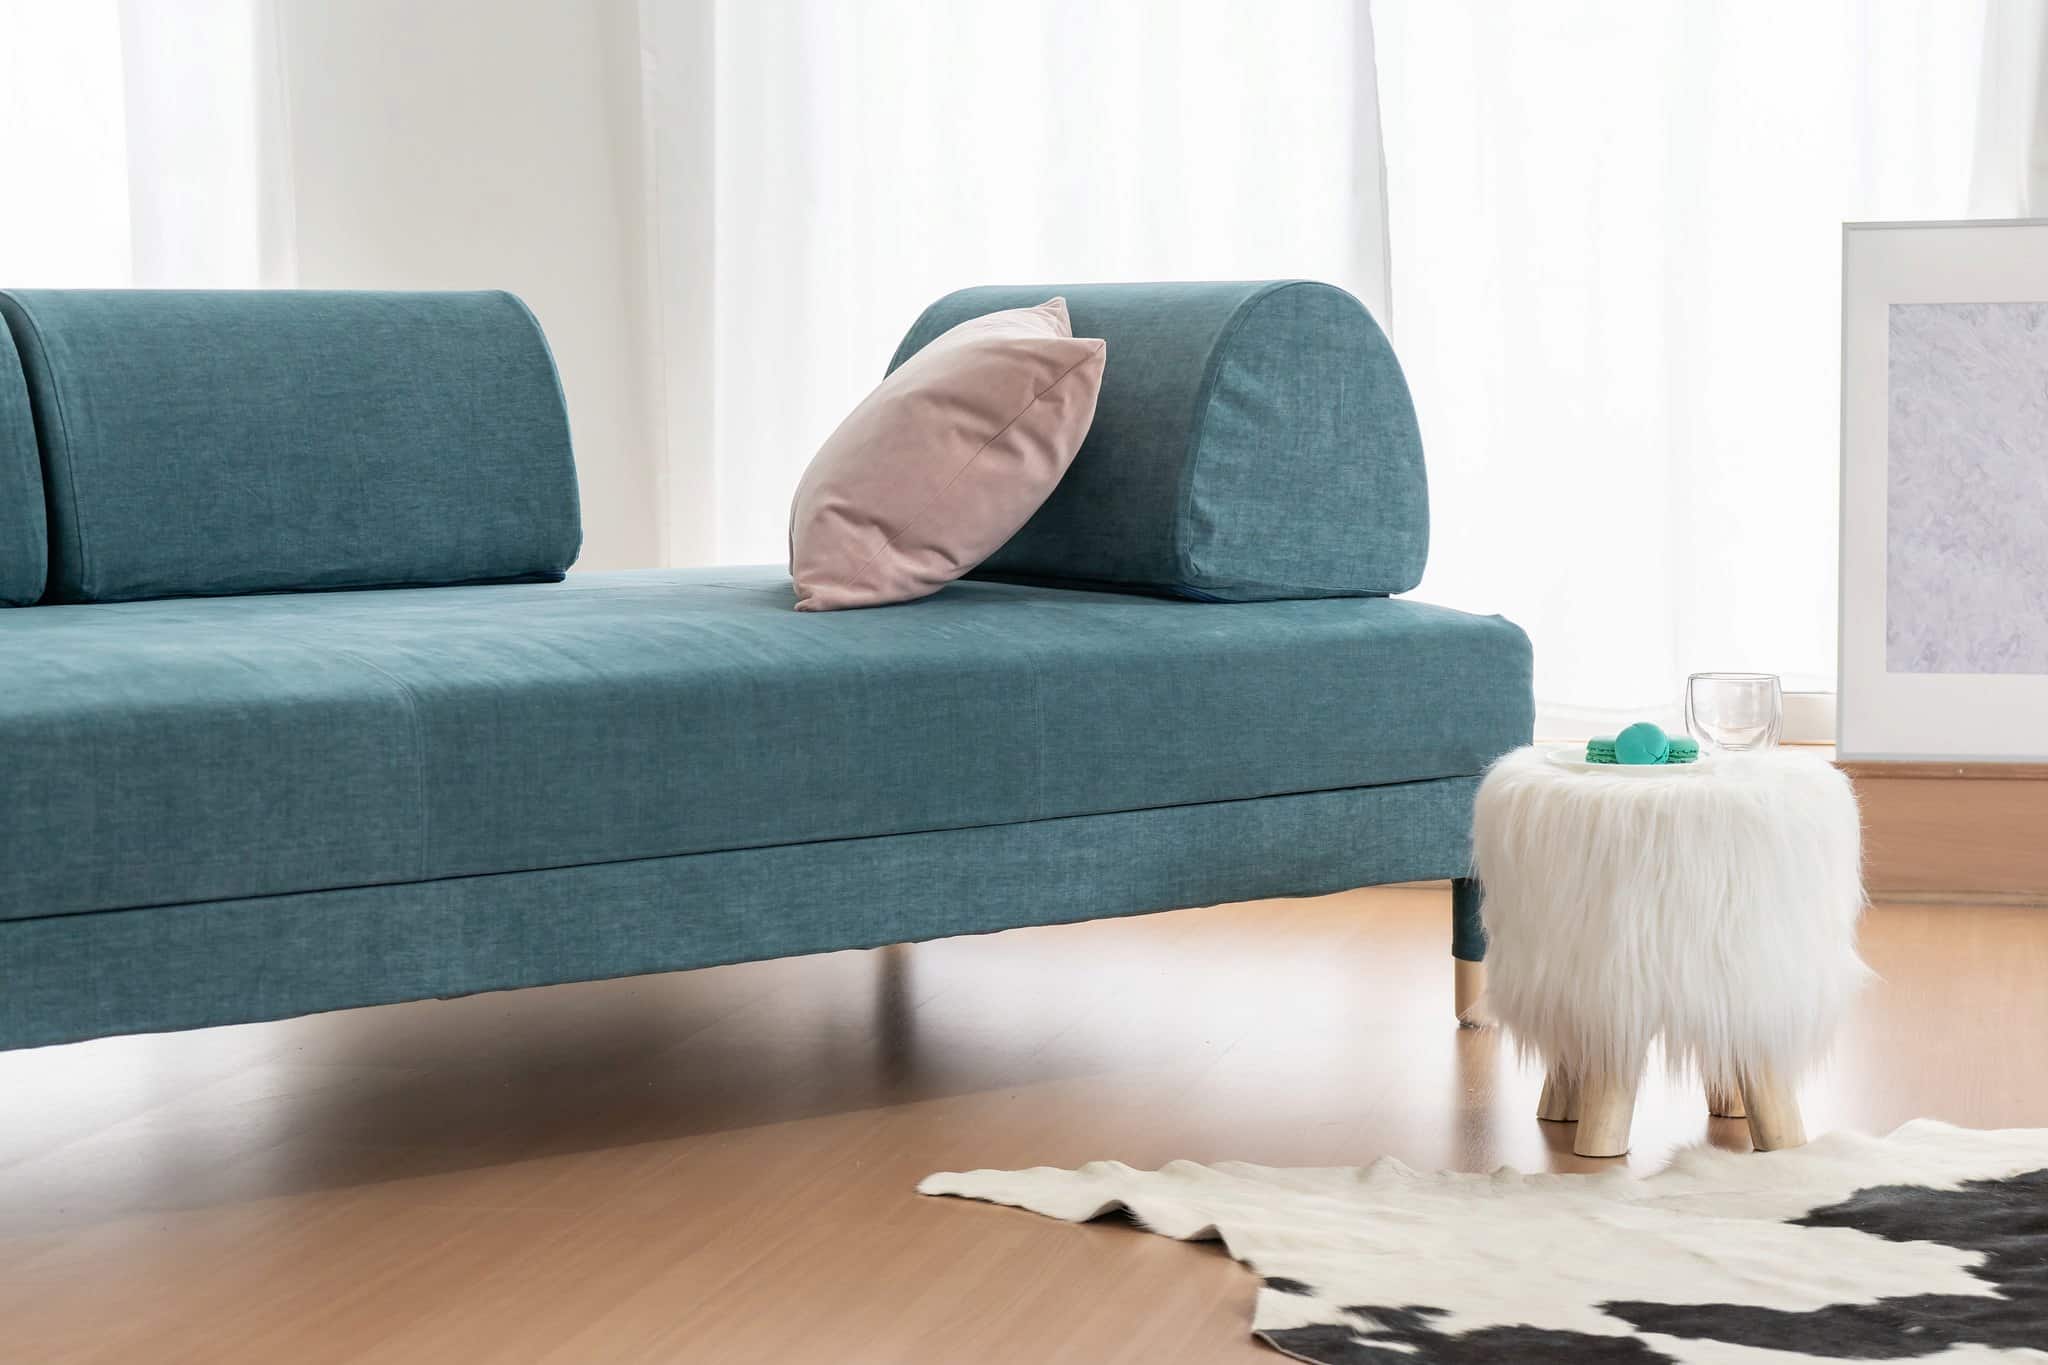 reserva Están familiarizados Diez años Opinión y Reseña Sofá Cama Flottebo de IKEA: diseño poco convencional,  estructura inusual | Blog Comfort Works - Inspiración y decoración